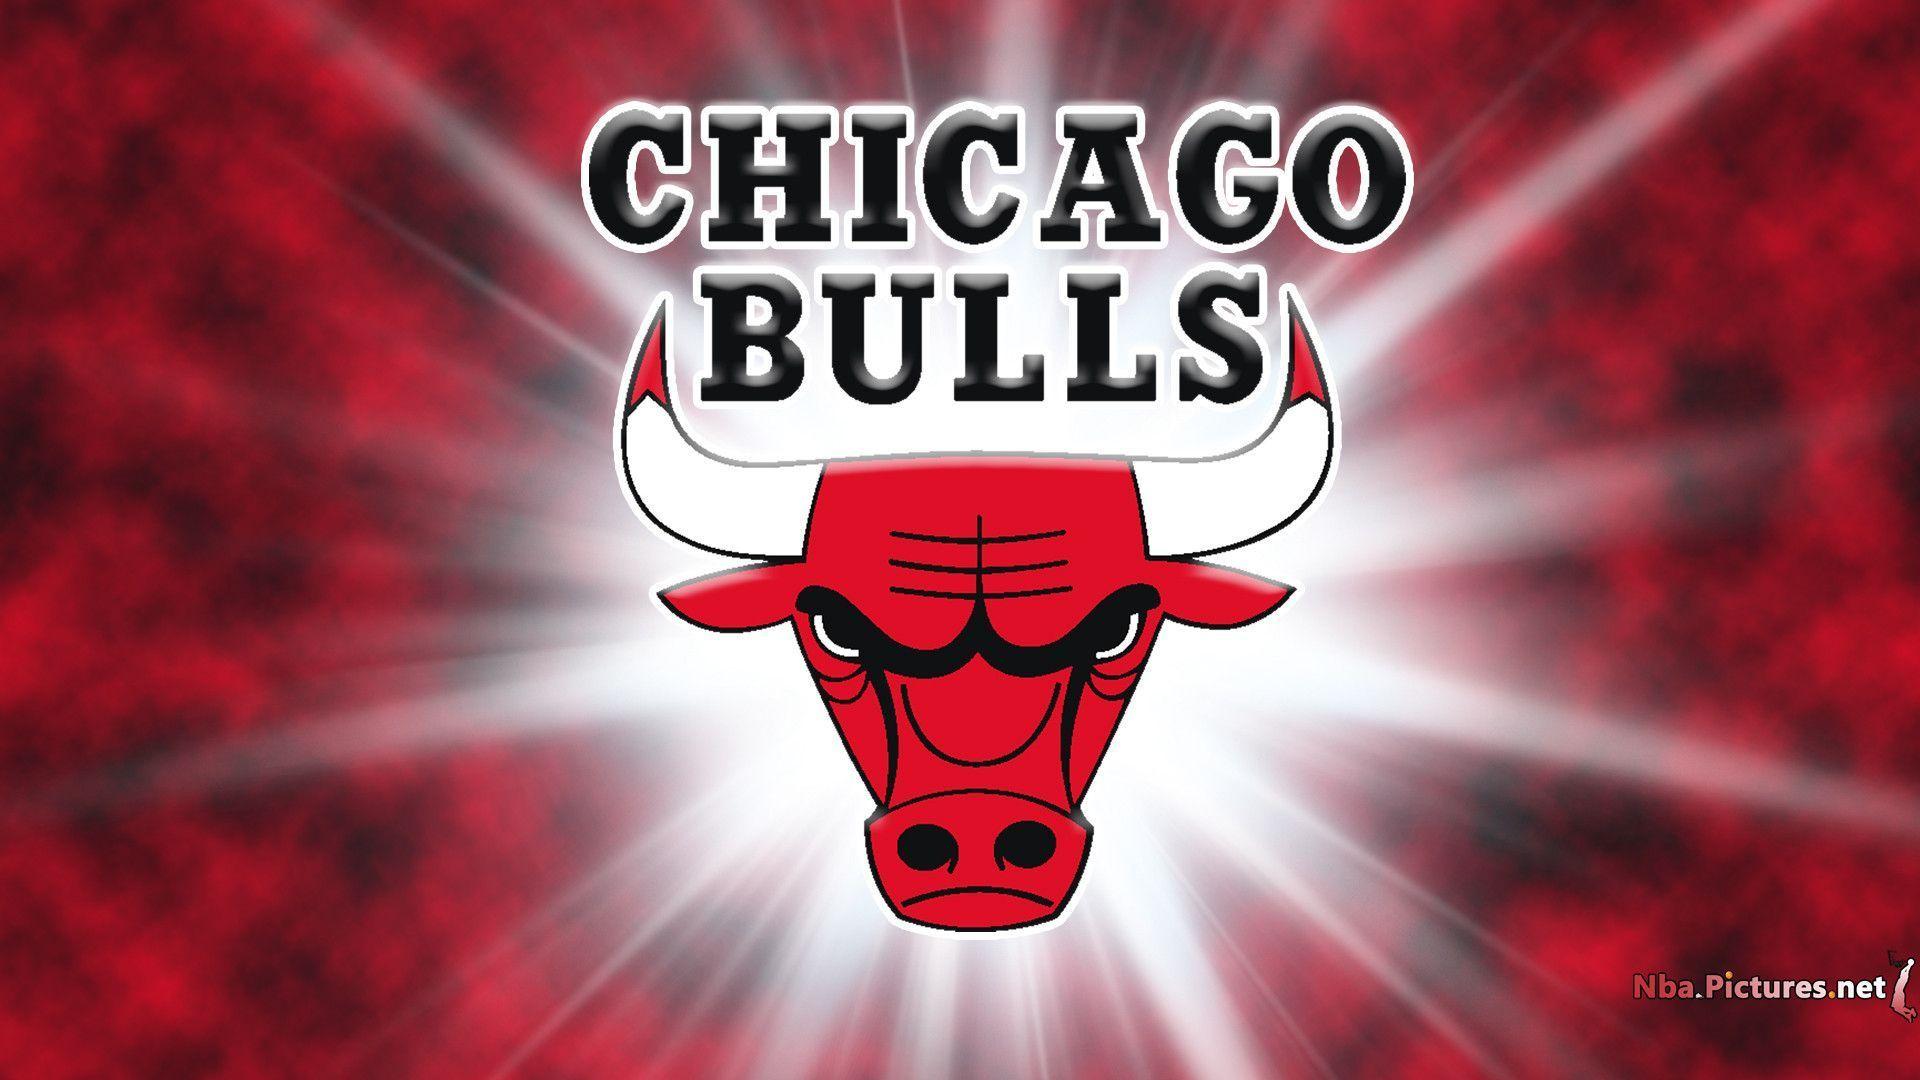 best image about Da Bulls Logos Bulls. HD Wallpaper